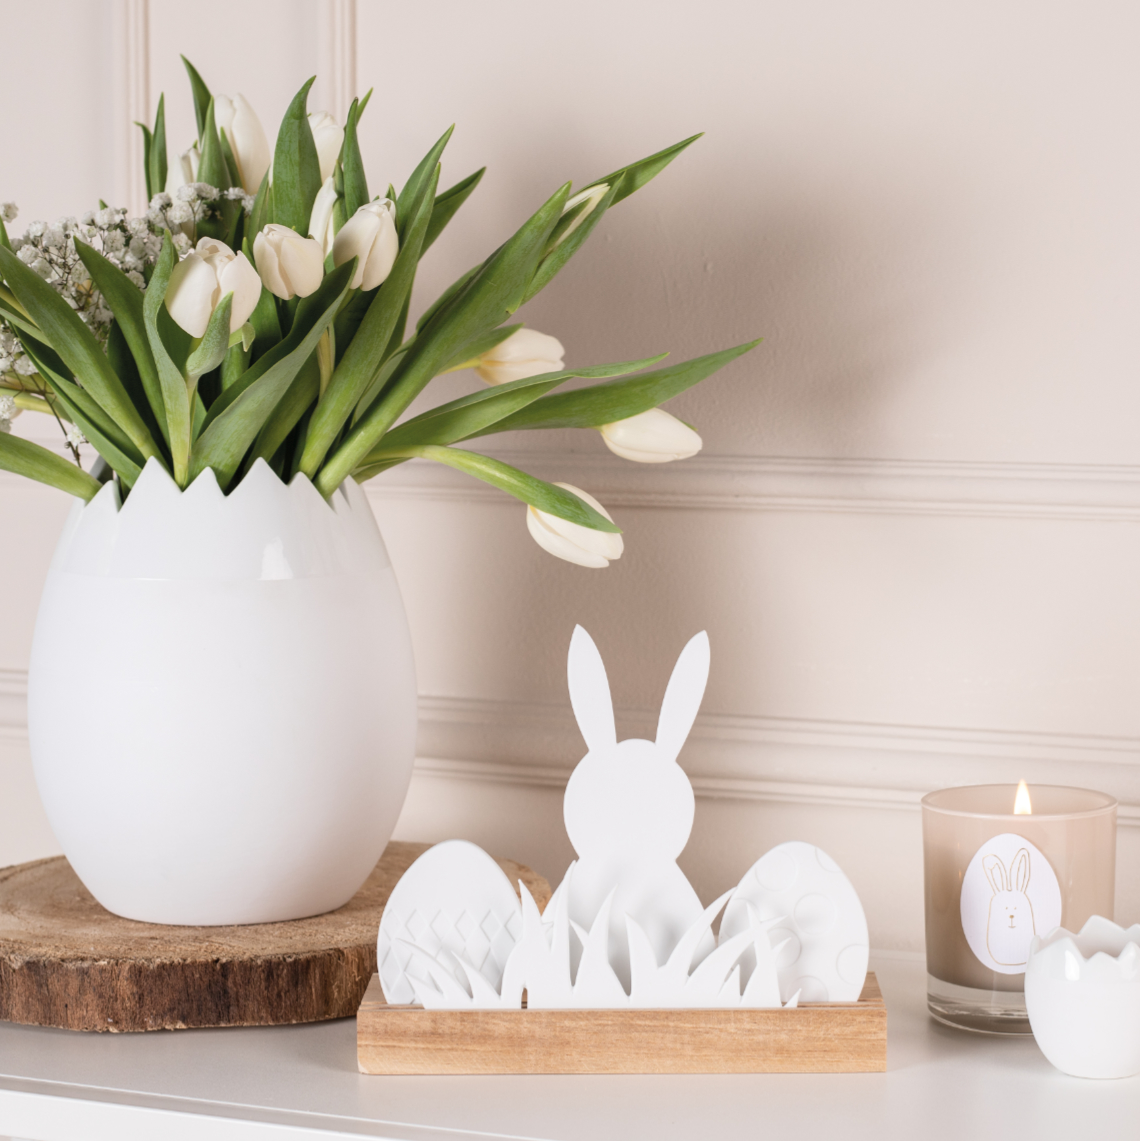 Décoration de Paques avec lapins, oeufs et vase